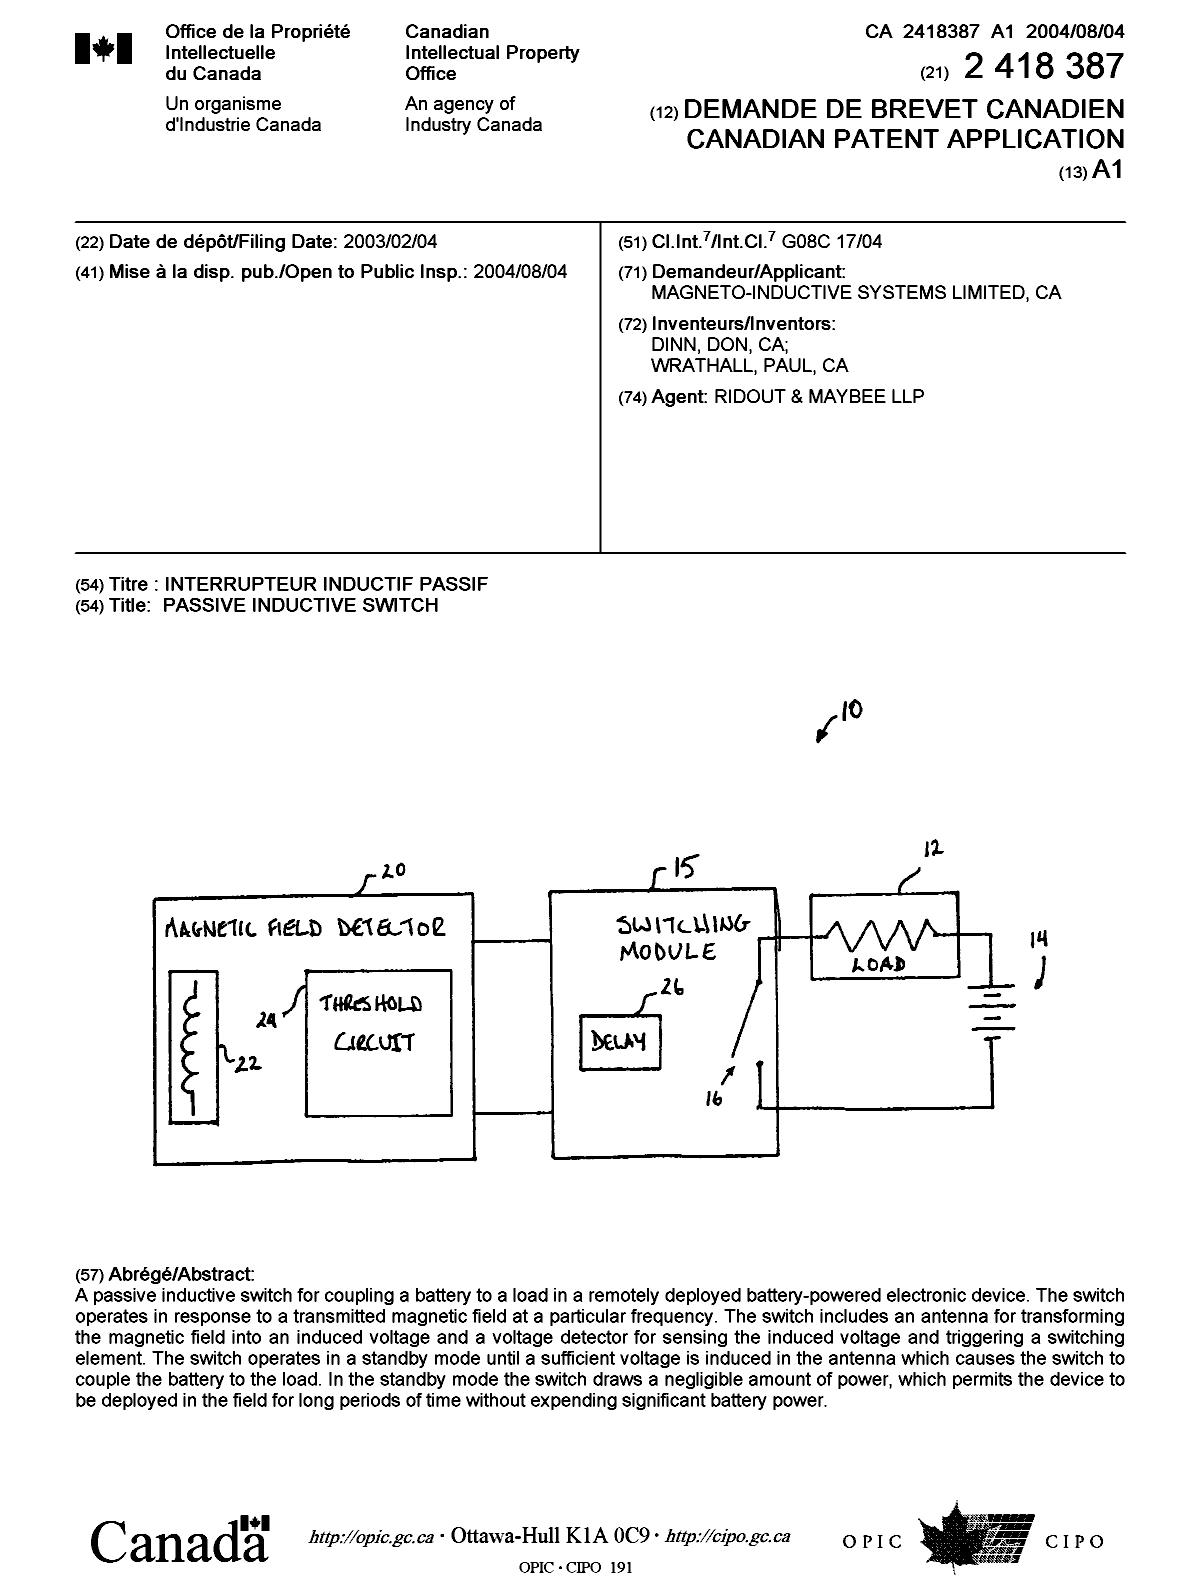 Document de brevet canadien 2418387. Page couverture 20040709. Image 1 de 1